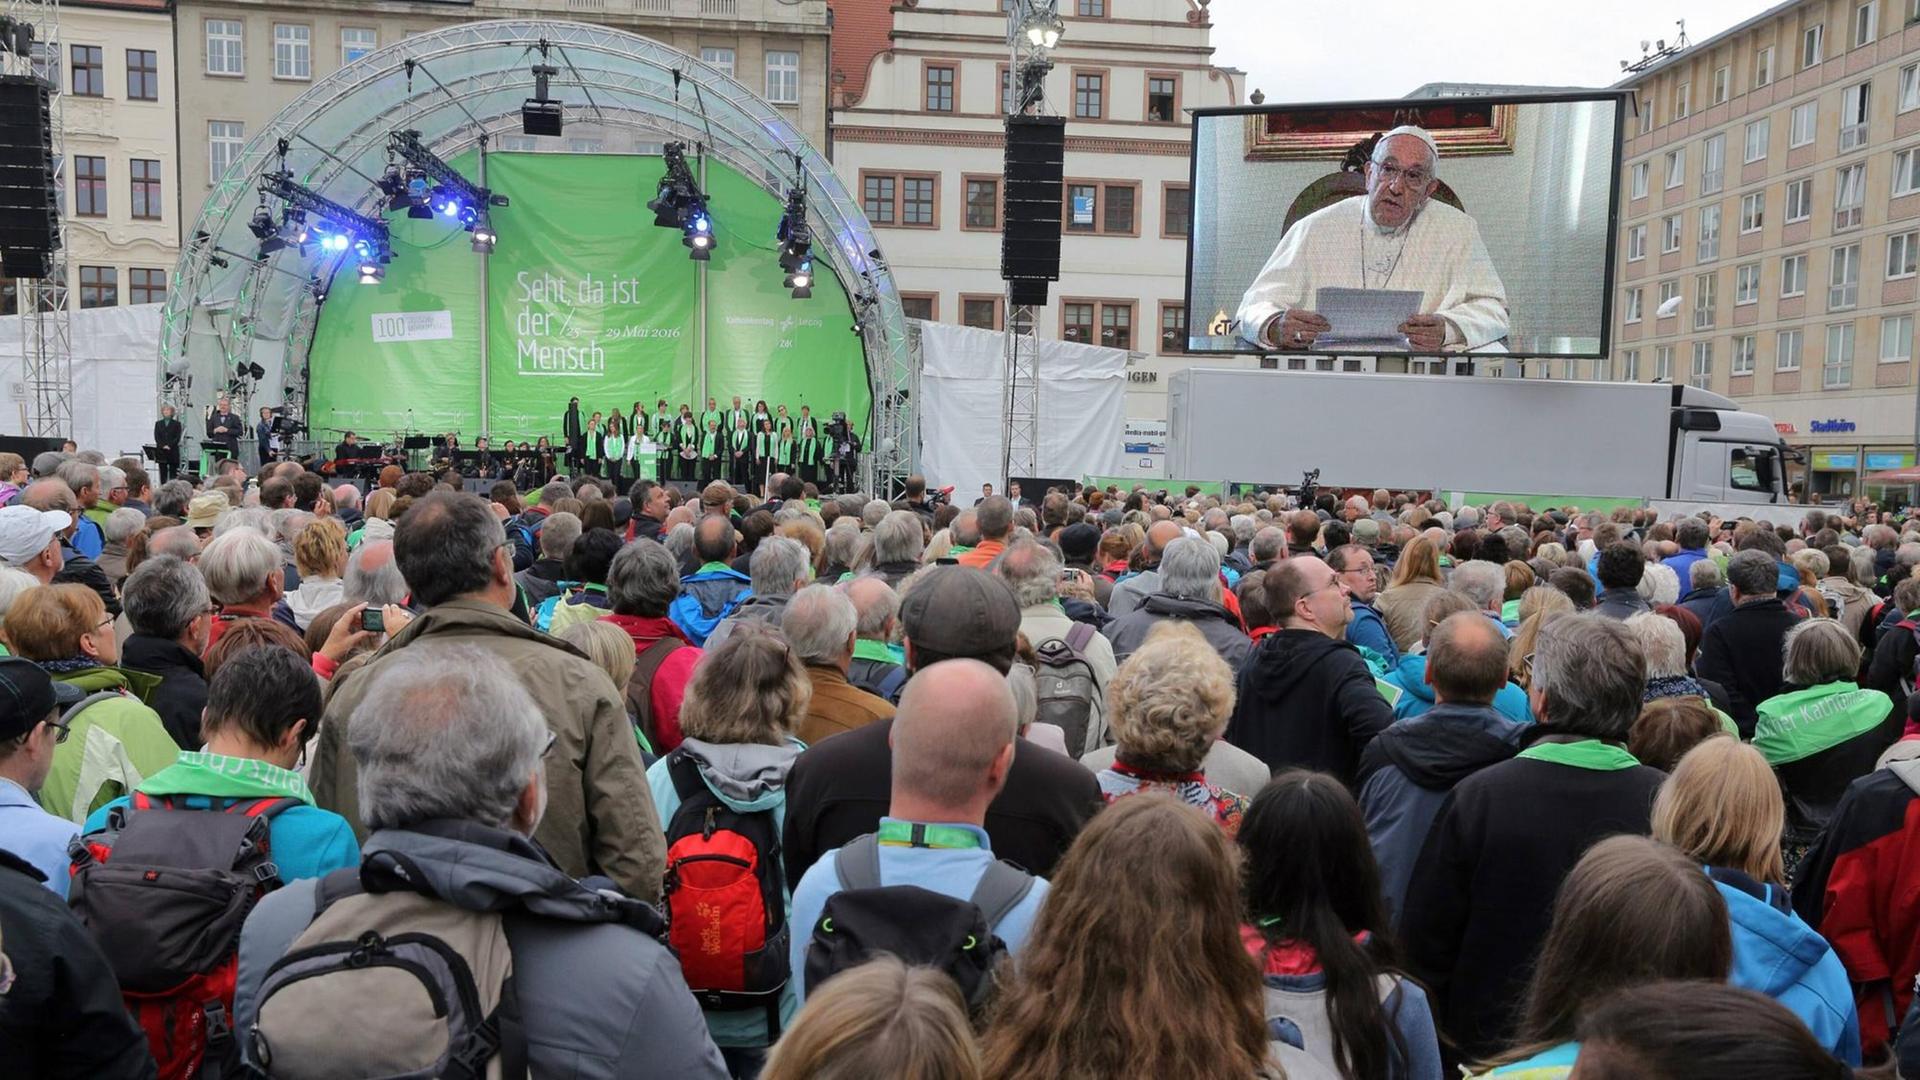 Papst Franziskus wendet sich mit einer Videobotschaft an die Teilnehmer des Katholikentags in Leipzig, die vor einer Bühne stehen.